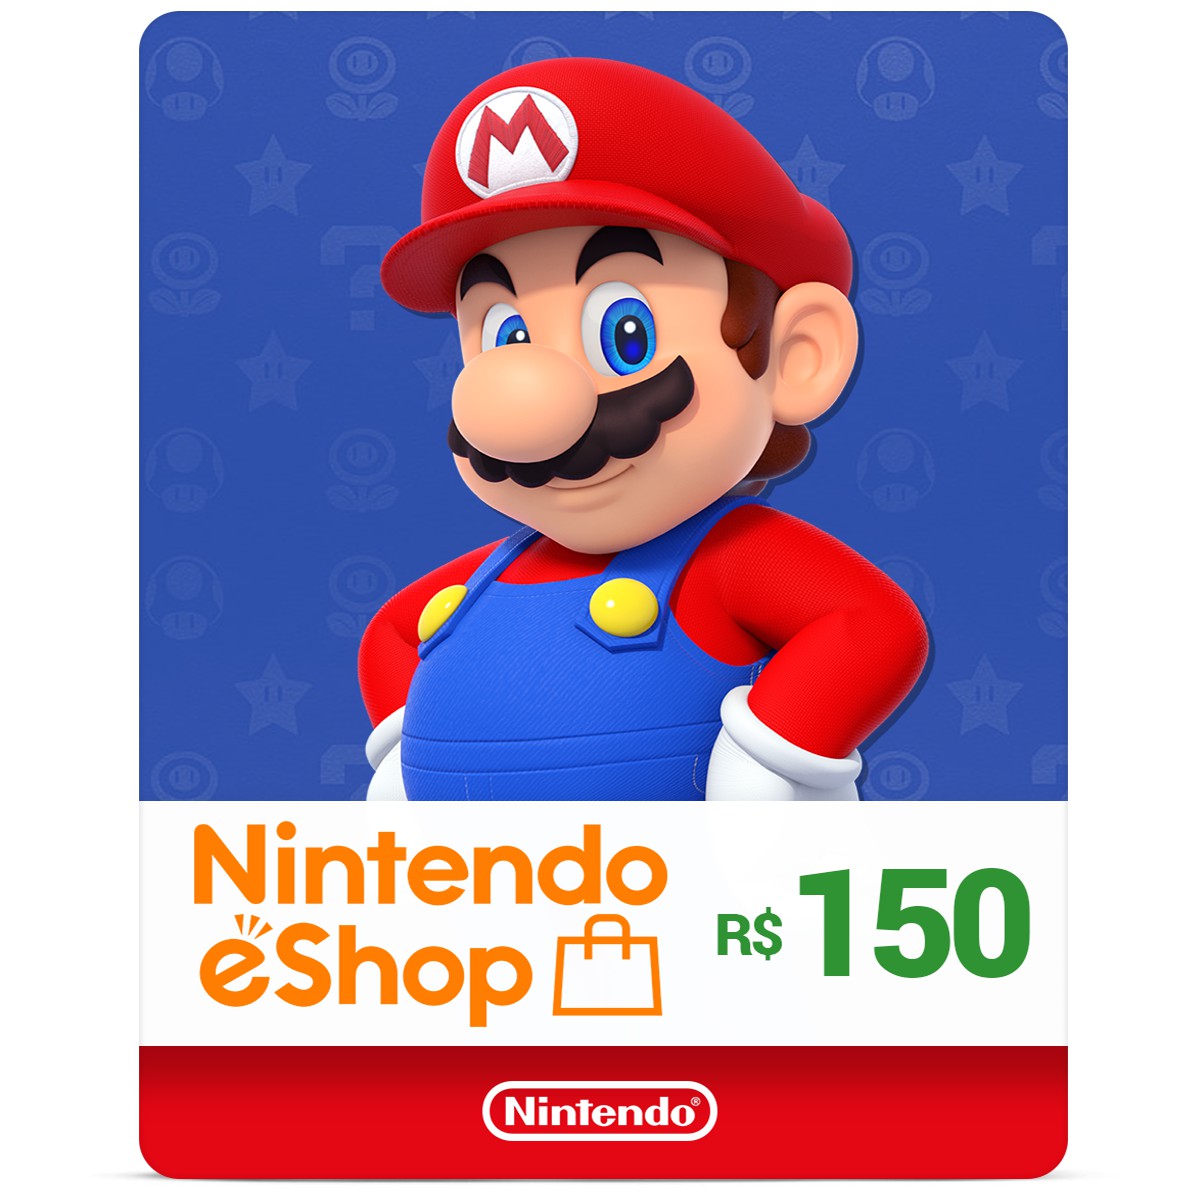 Gift Cards digitais da Nintendo eShop chegam ao Brasil - Nintendo